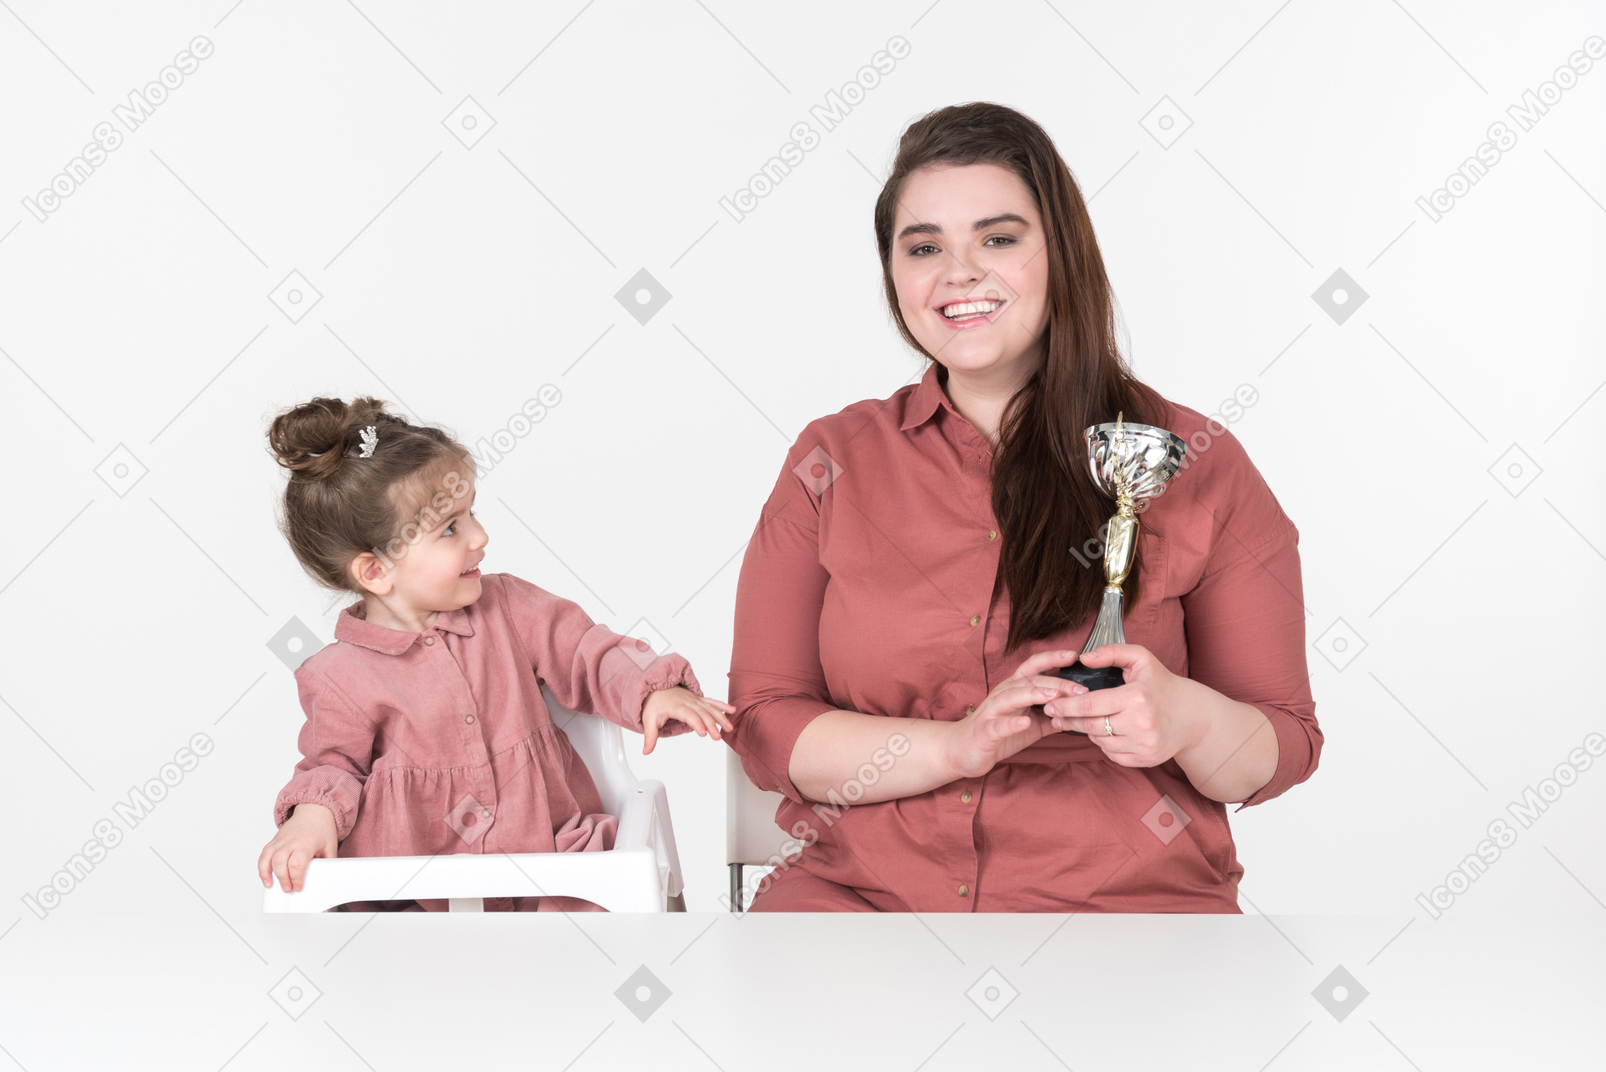 Madre e figlia piccola seduta al tavolo con una coppa del premio